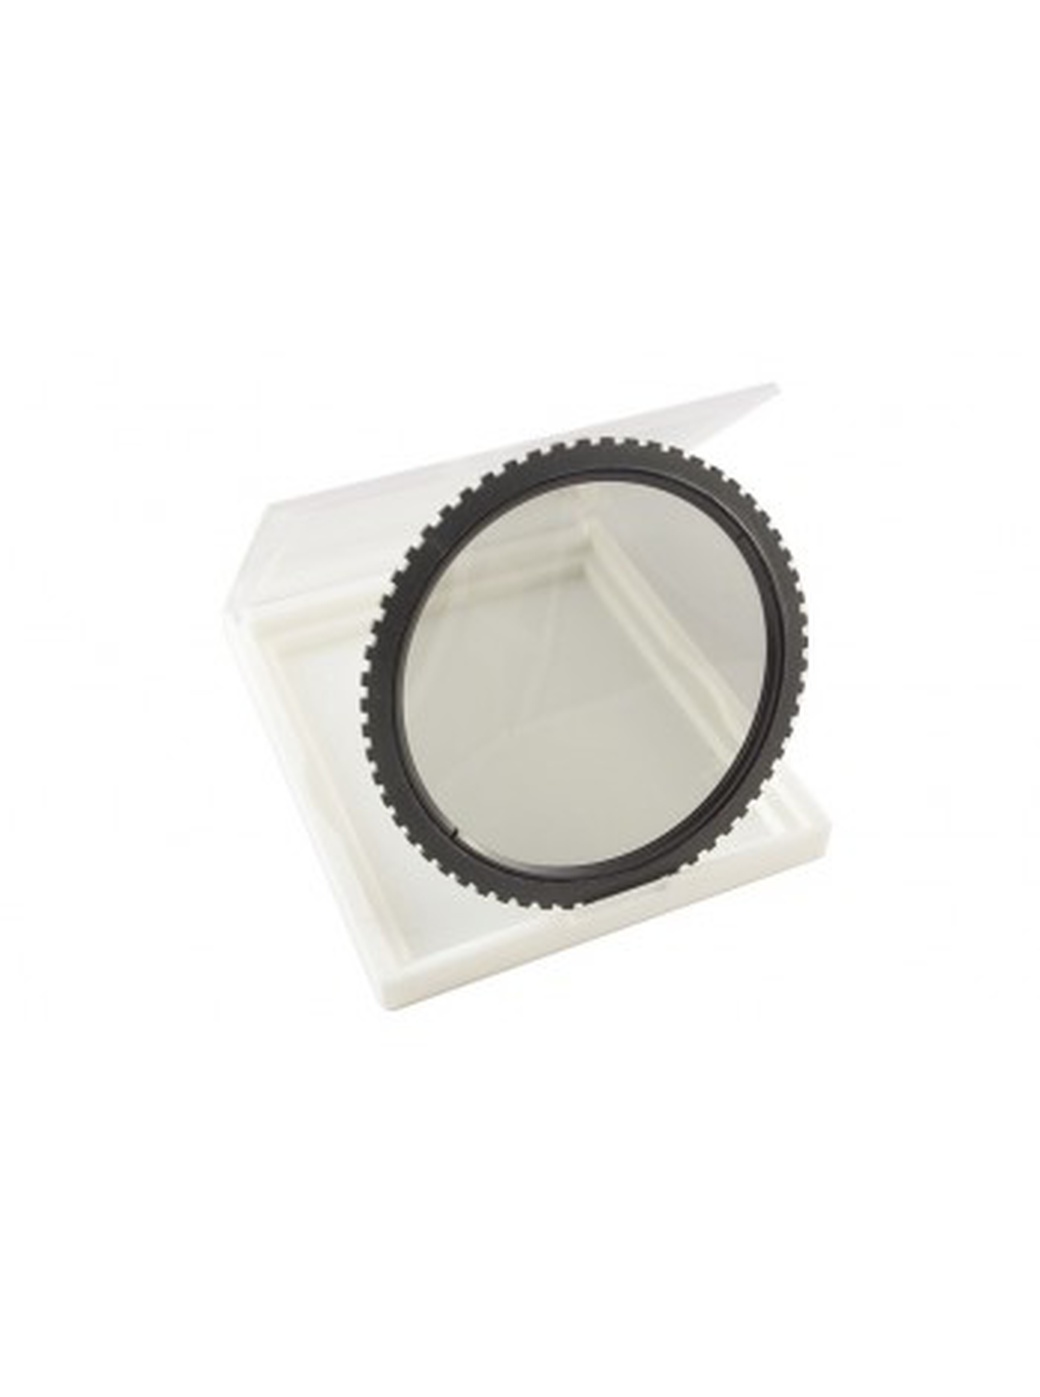 Фильтр системный Fujimi Z pro-серия CPL поляризационный, круглый фото